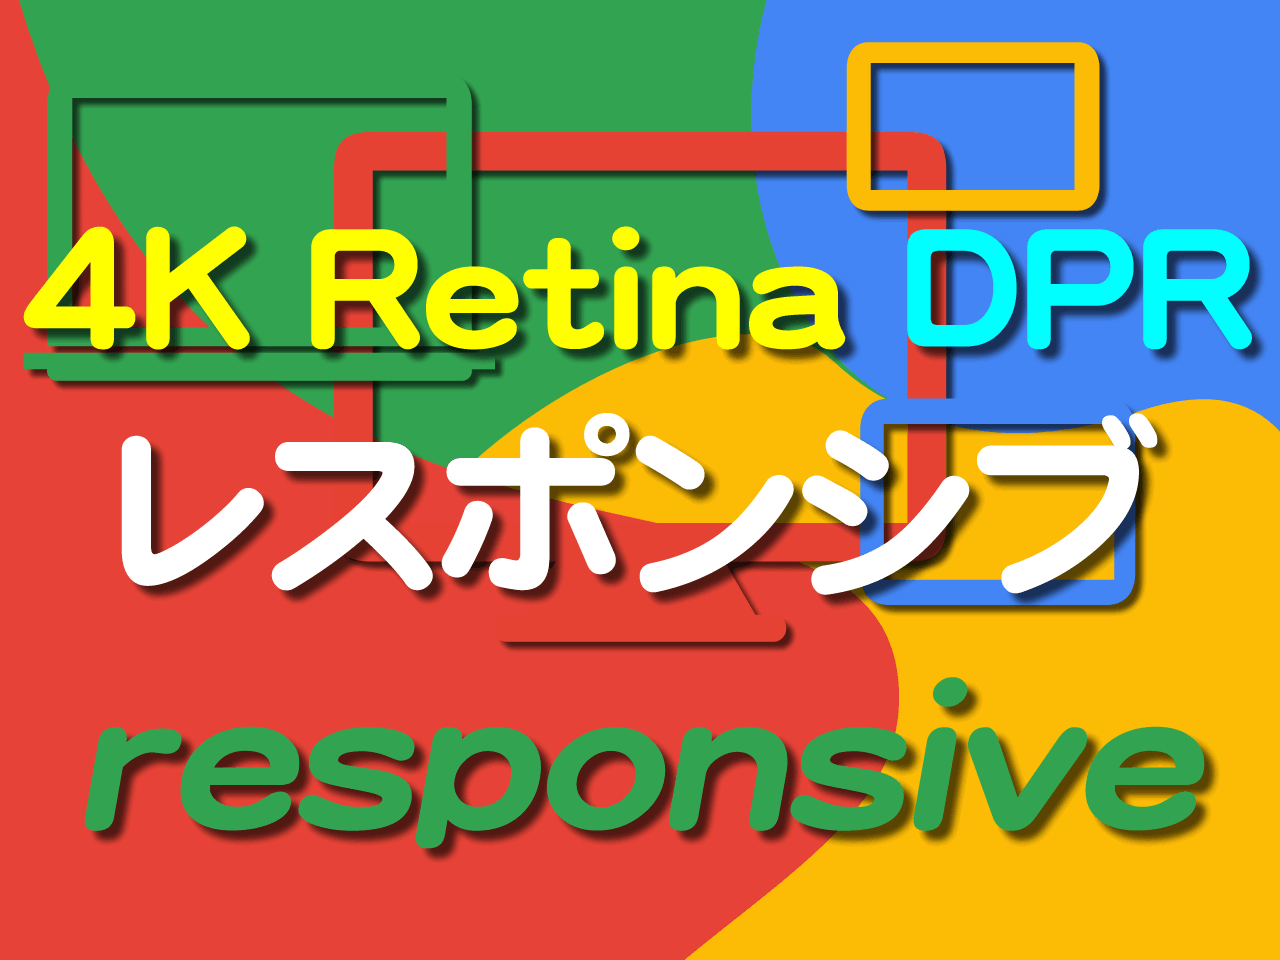 レスポンシブ問題 CSSピクセルとデバイスピクセル DPR(Device Pixel Ratio)とモバイルファースト 